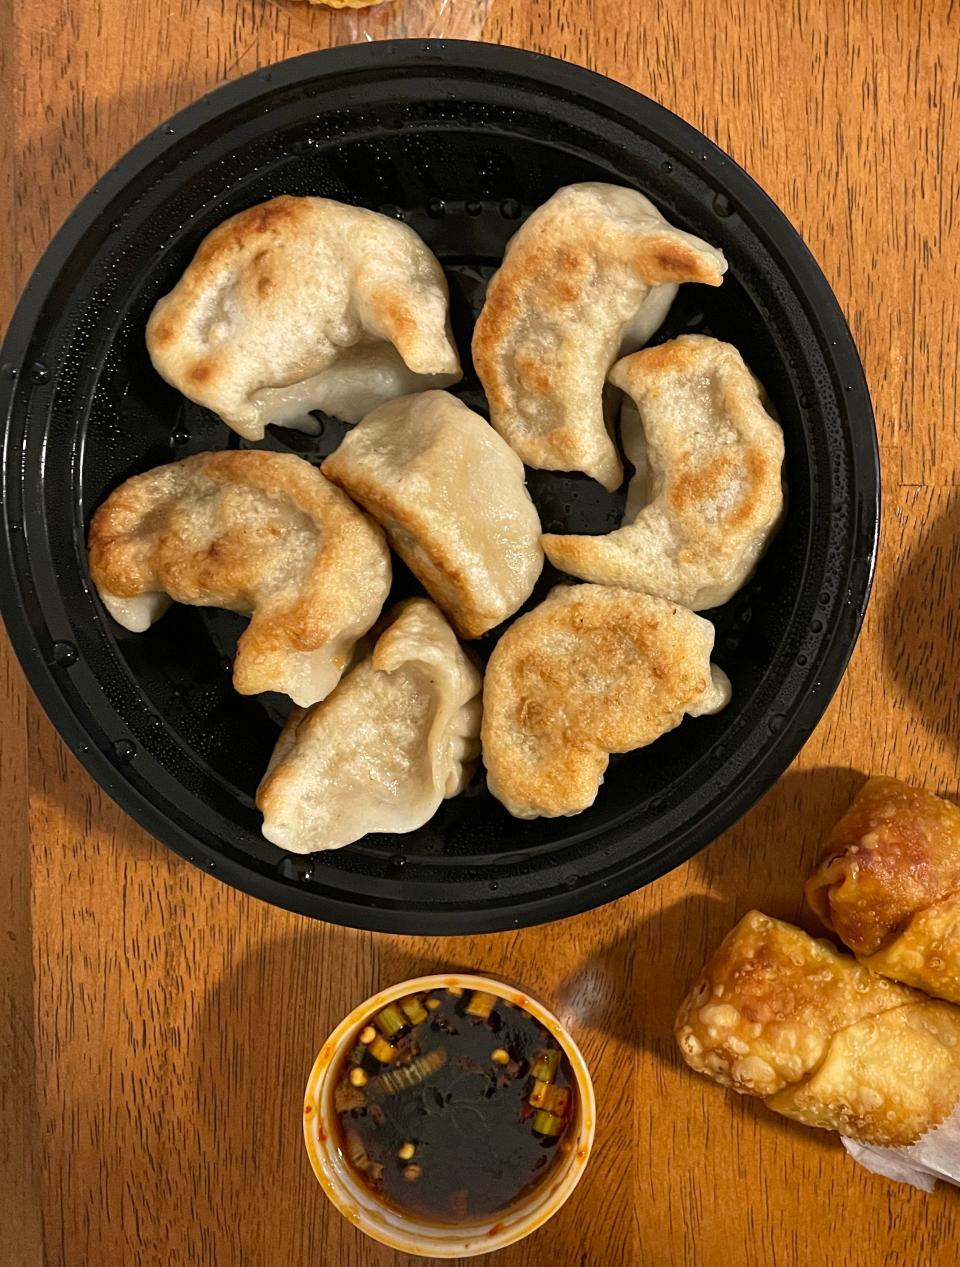 An order of fried dumplings from Hang Yuen Kitchen is $8.25 for seven dumplings.